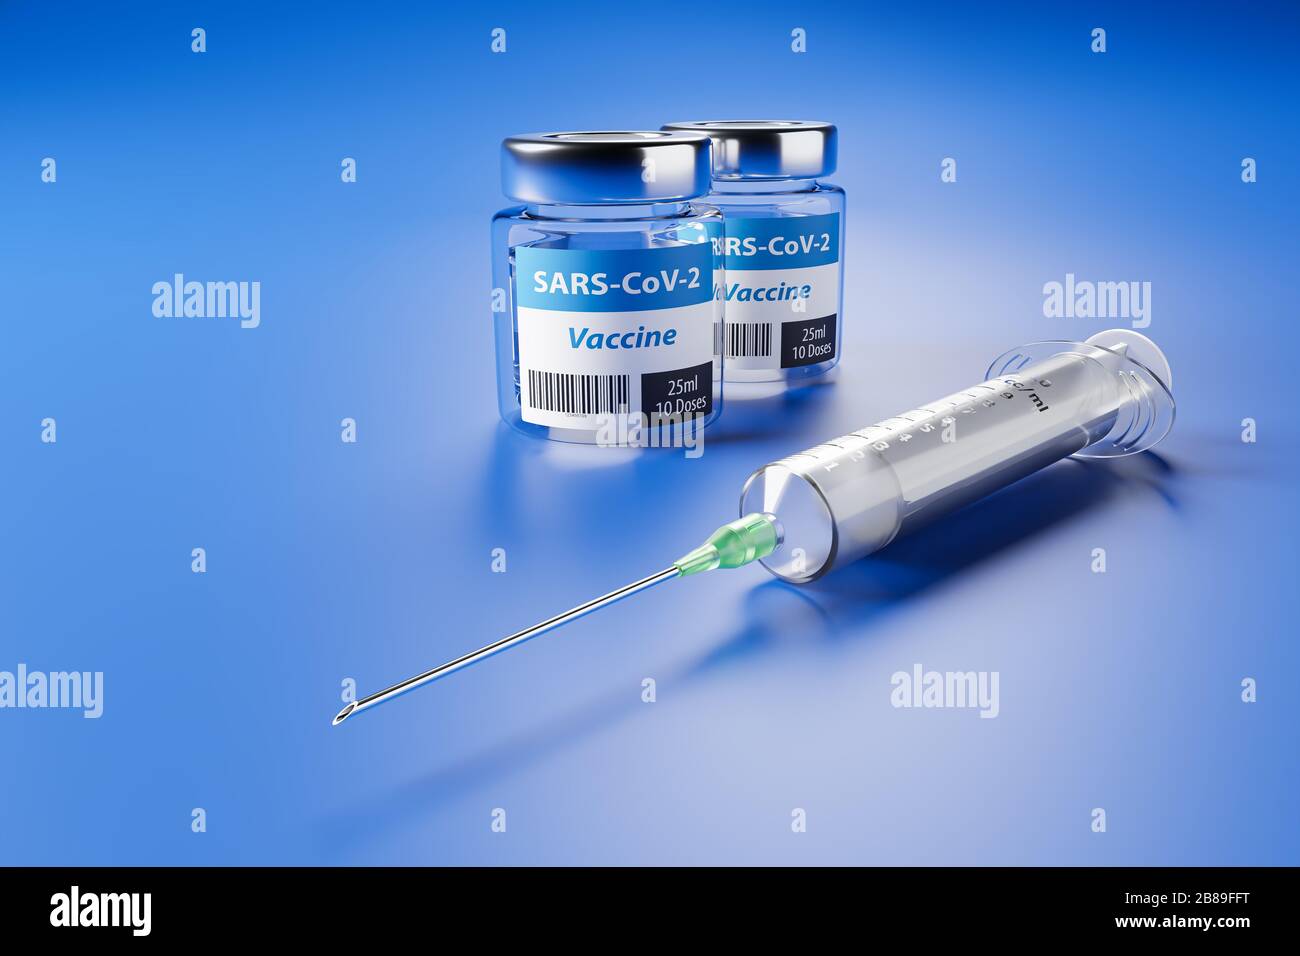 Vacunación contra el nuevo virus de la Corona SARS-CoV-2: Dos recipientes de vidrio con 10 dosis cada uno y una jeringa delante. Foto de stock